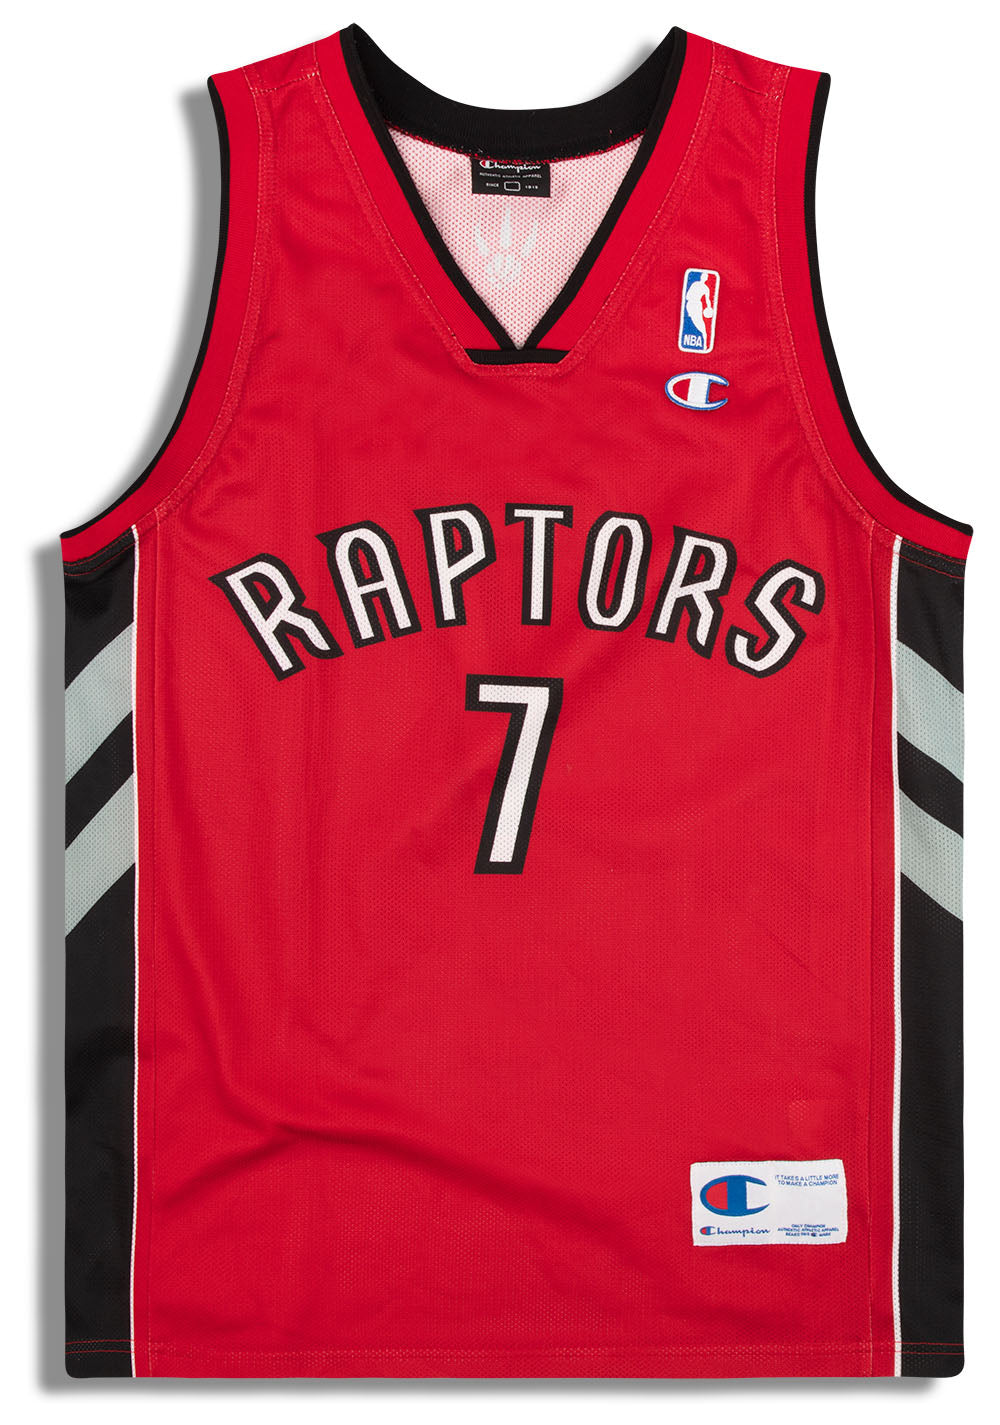 Toronto Raptors Jerseys in Toronto Raptors Team Shop 